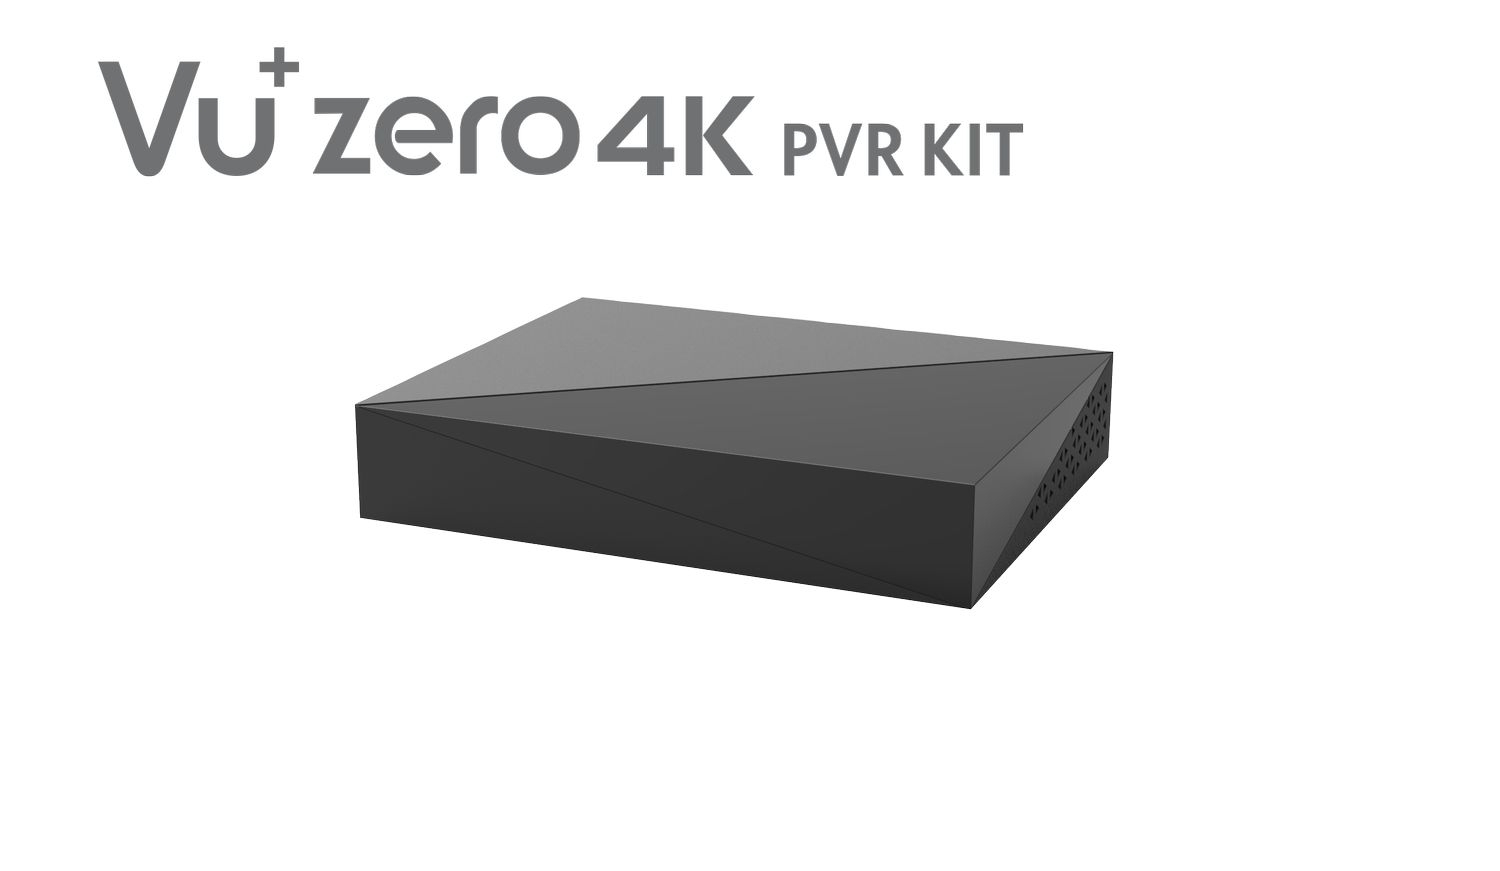 VU+Zero 4K PVR Kit incl. 2TB HDD